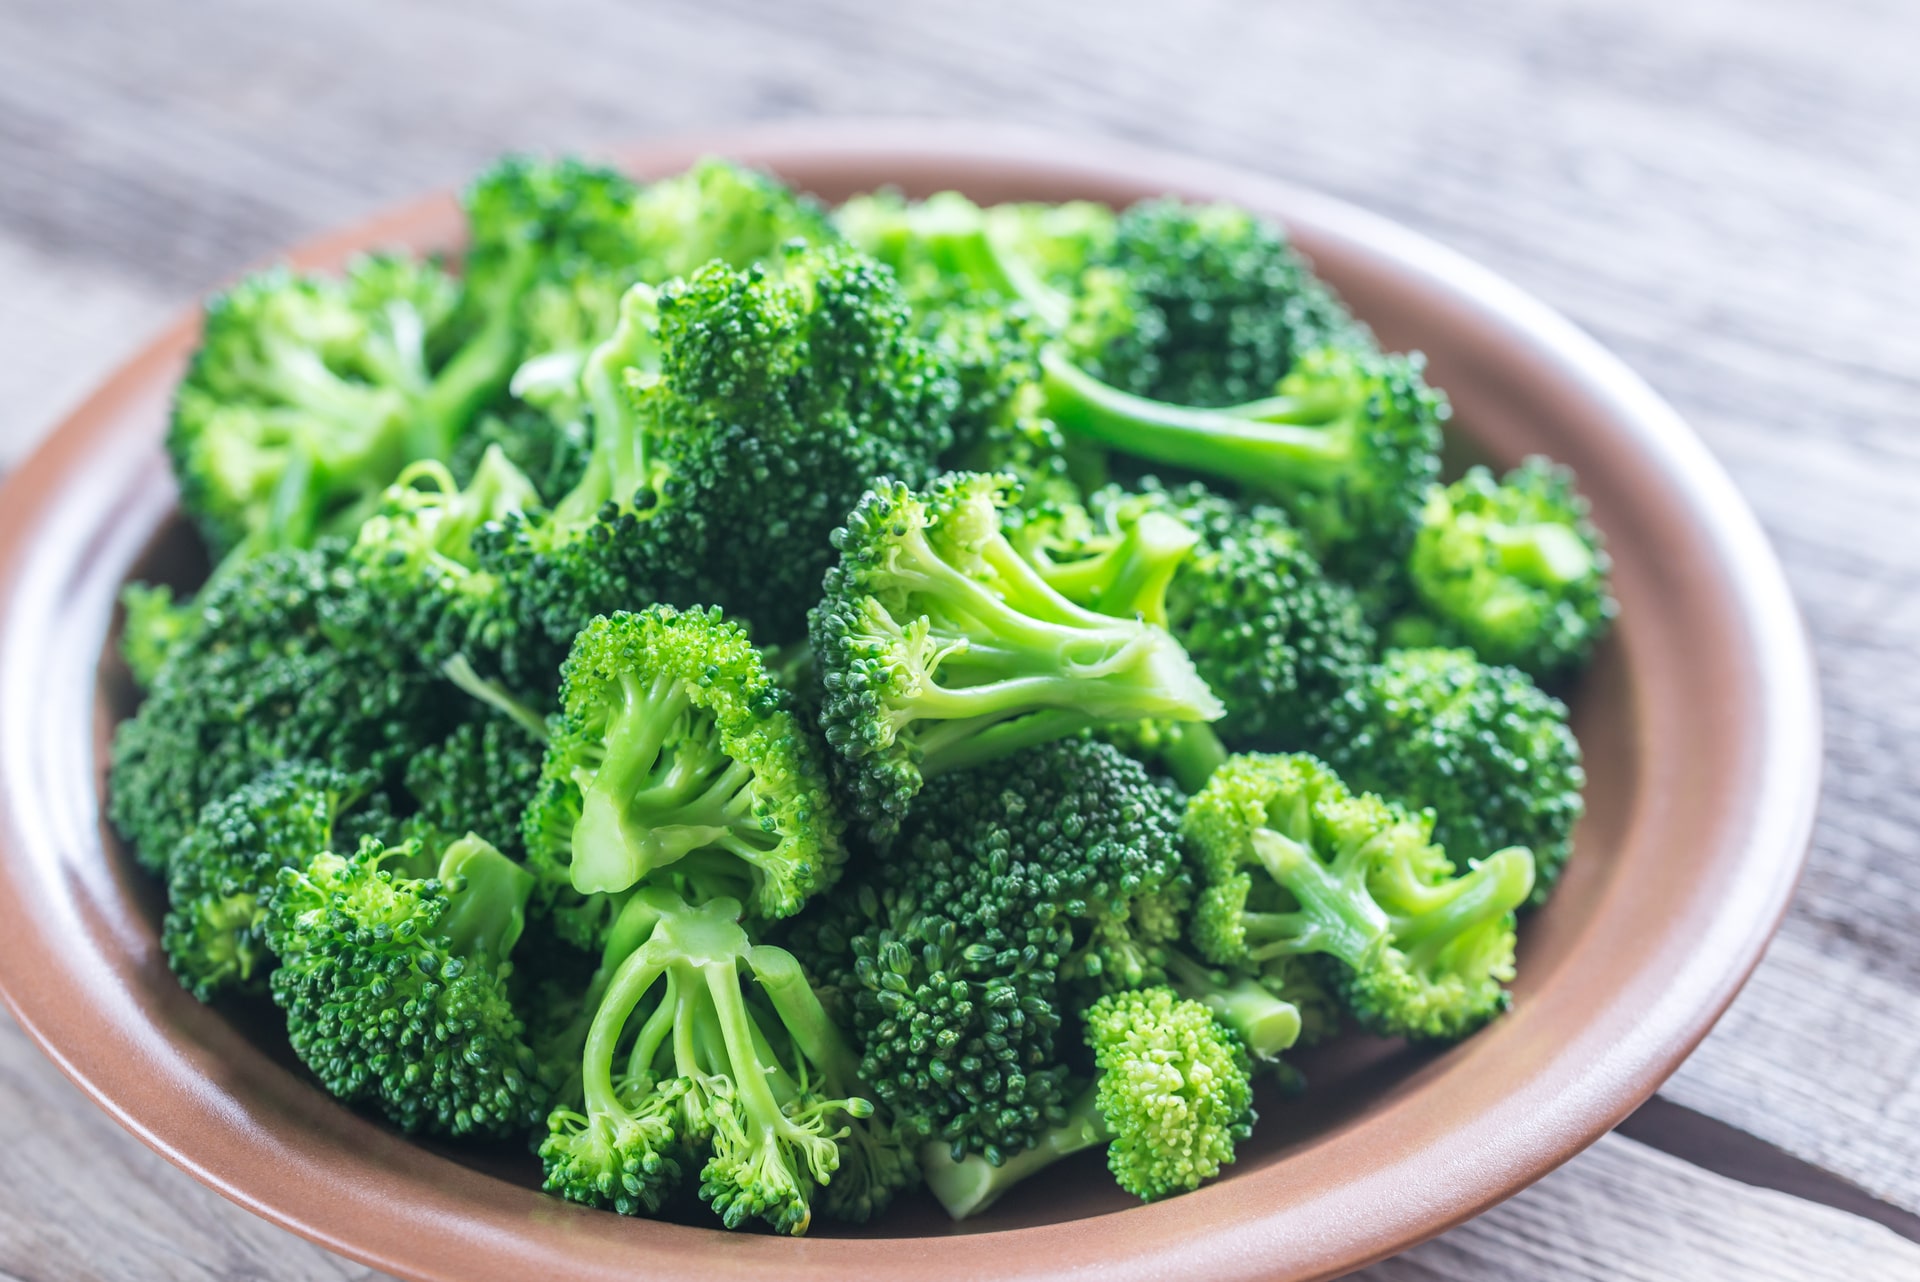 Brokkoli lecker zubereiten - alles was du wissen musst - Mehr Genuss